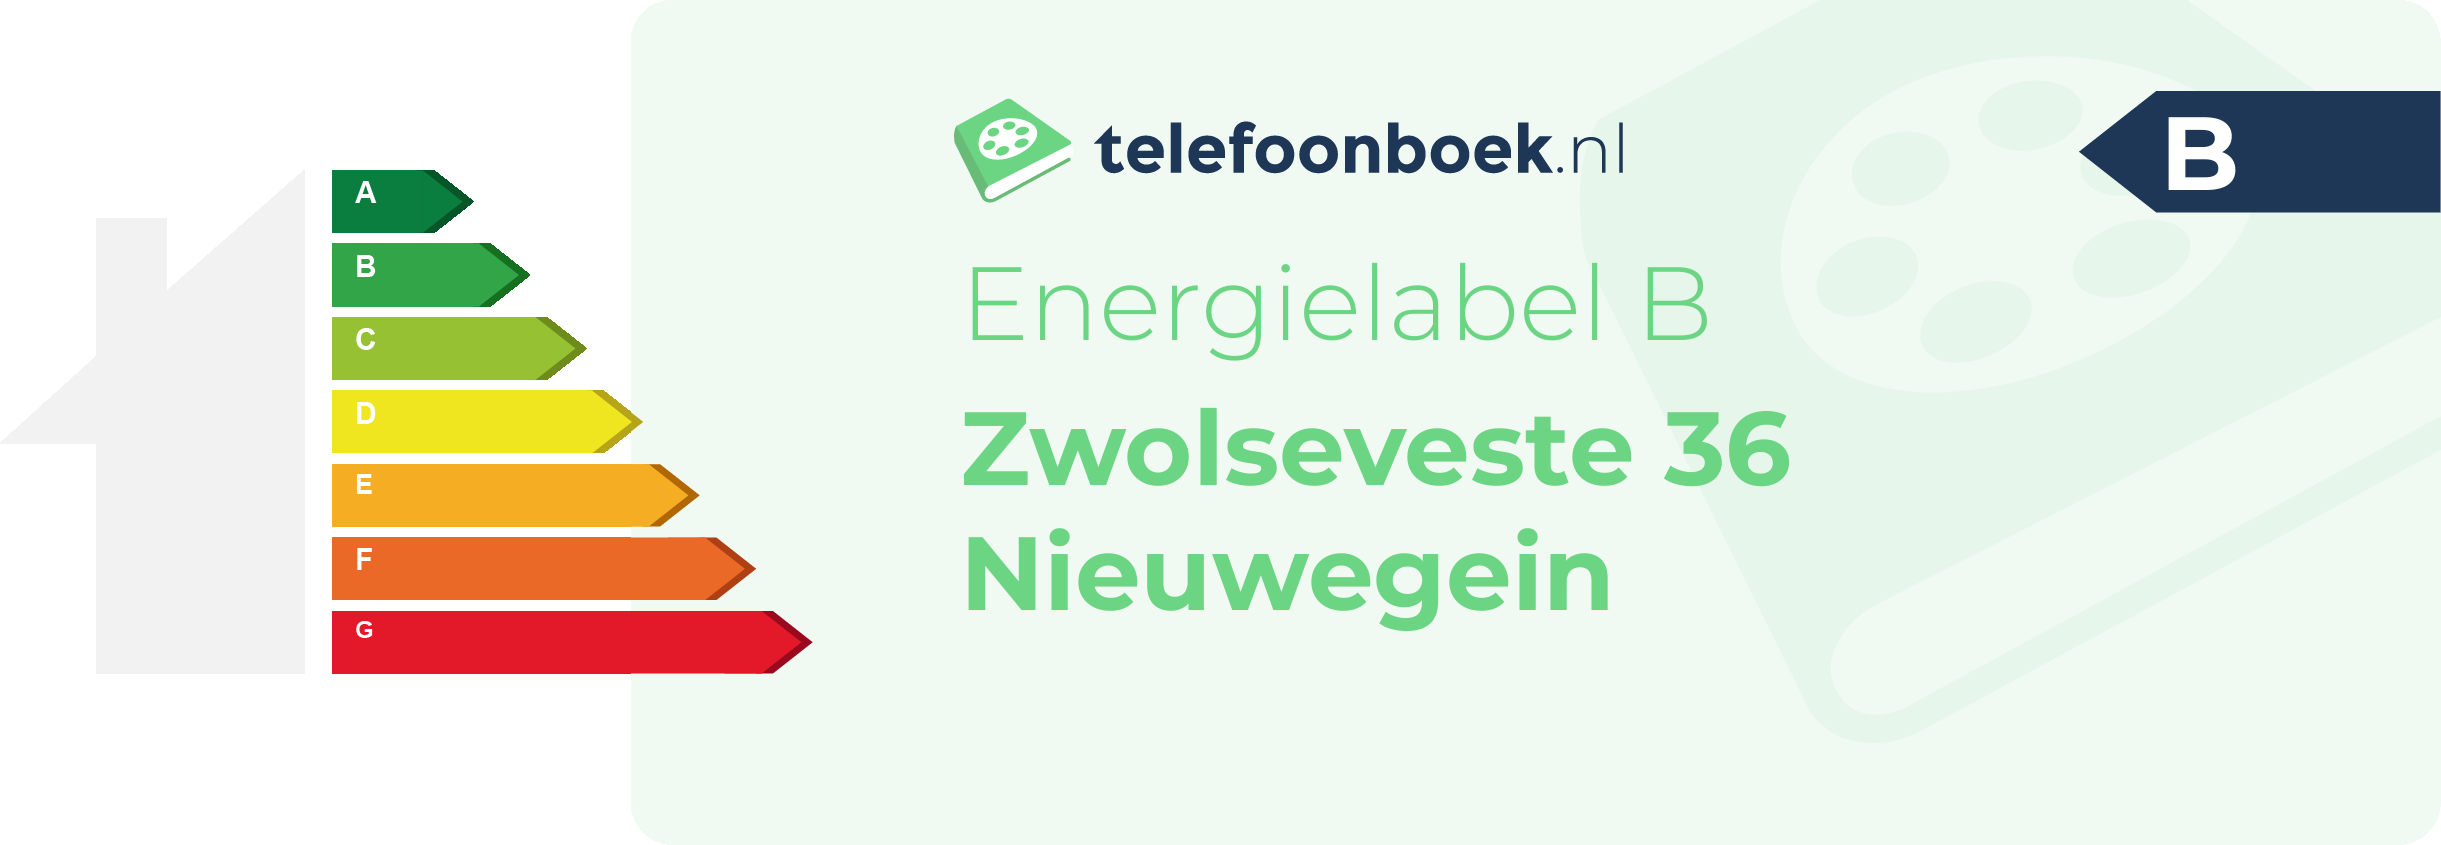 Energielabel Zwolseveste 36 Nieuwegein